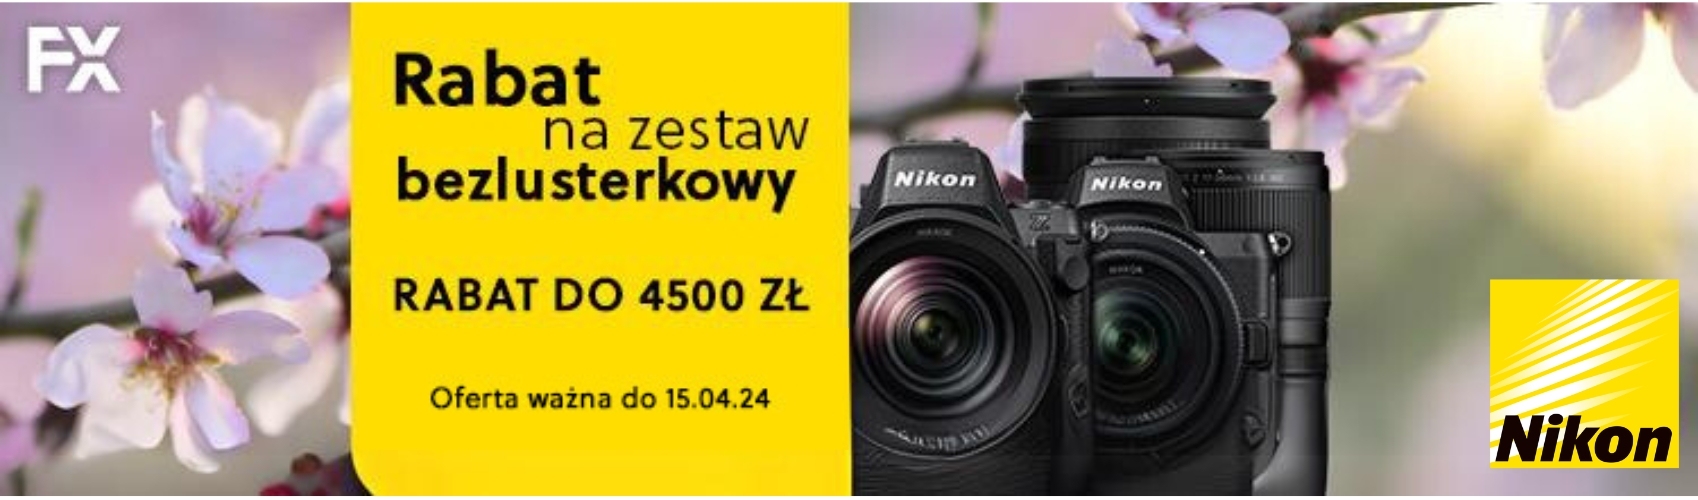 Nikon|Rabat na zestaw bezlusterkowy